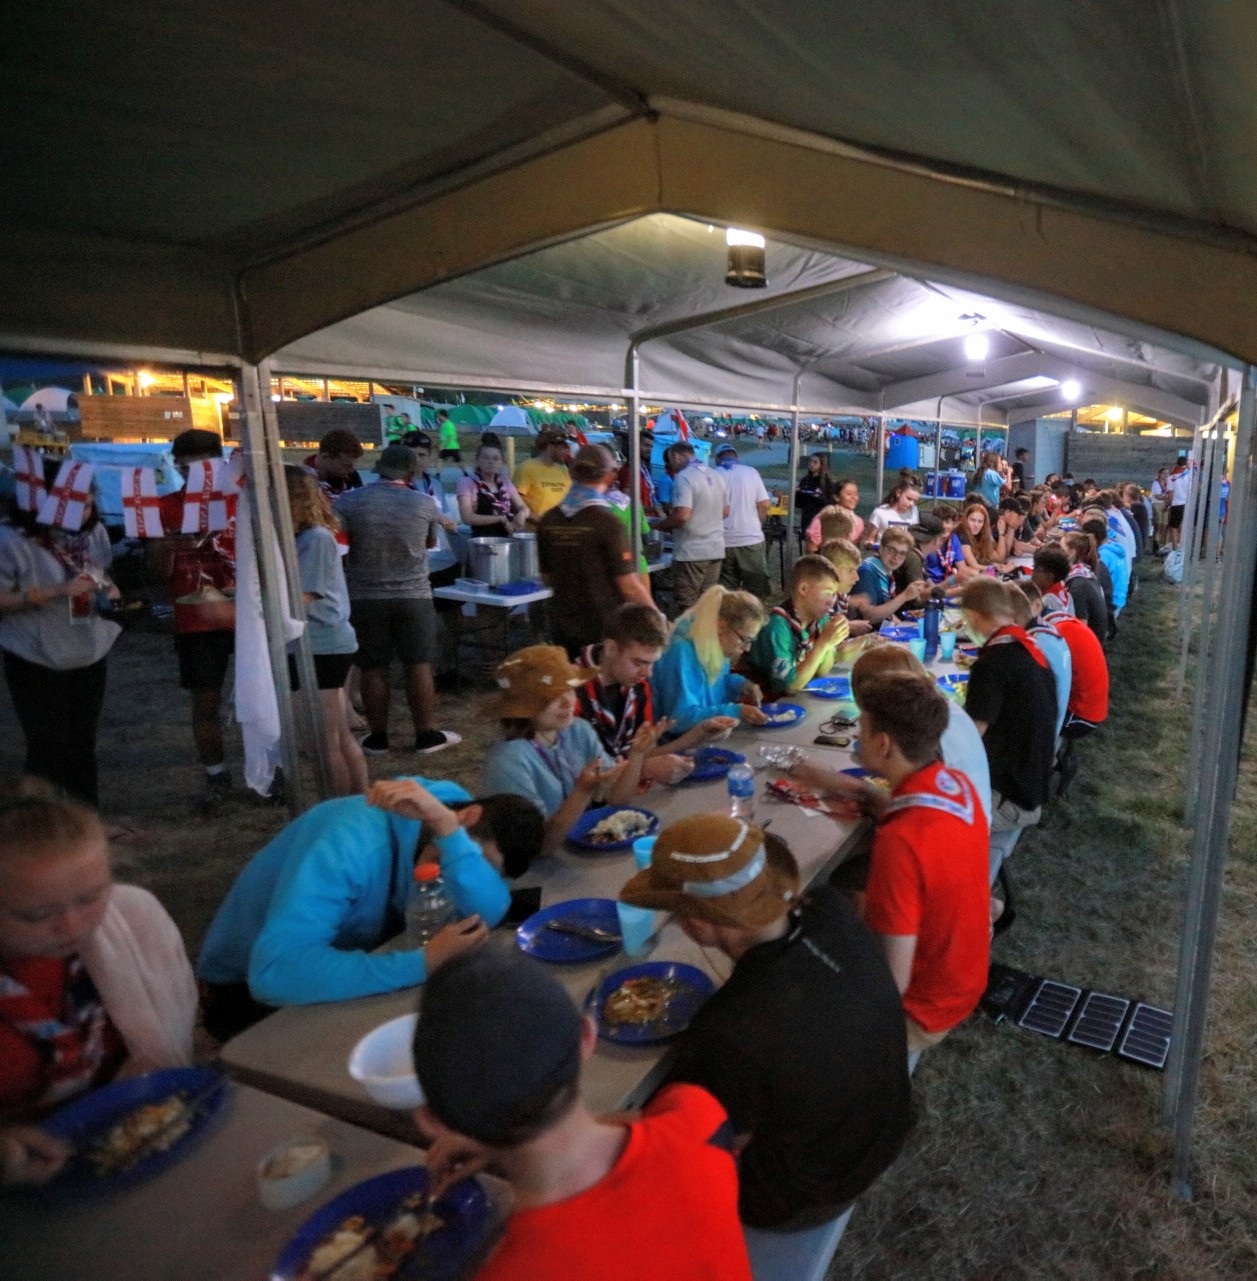 Les scouts combinent les campings pour un dîner communautaire